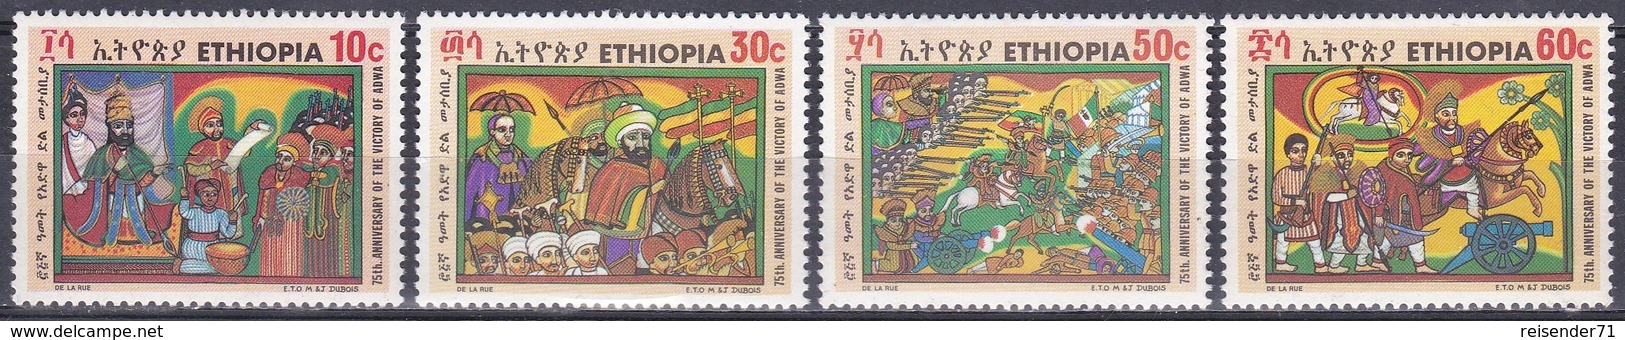 Äthiopien Ethiopia 1971 Geschichte History Schlachten Battles Königshäuser Royals Kaiser Menelik II. Adua, Mi. 679-2 ** - Äthiopien